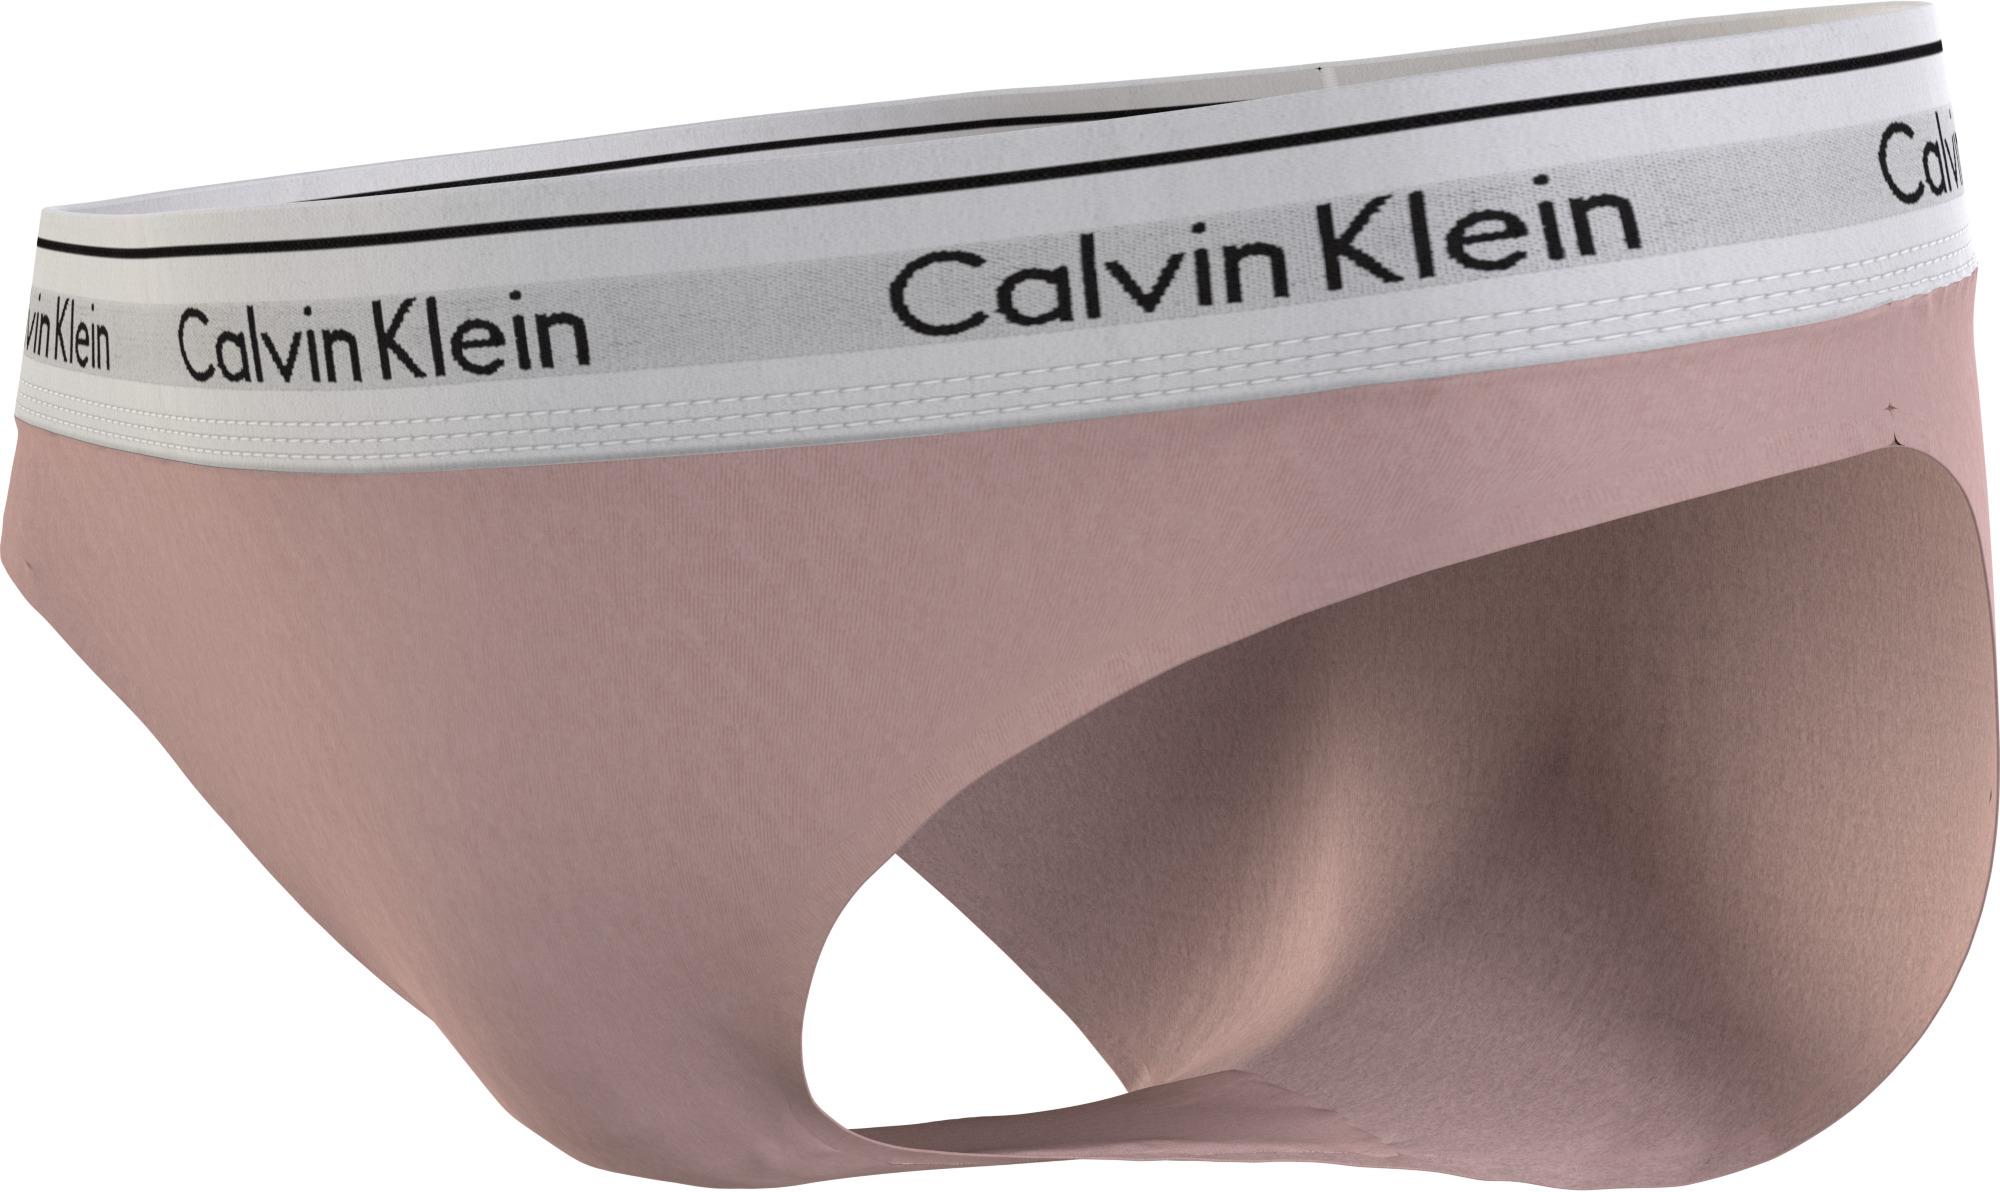 Calvin Klein Underwear Modern Cotton Bikini Nymph's Thigh 